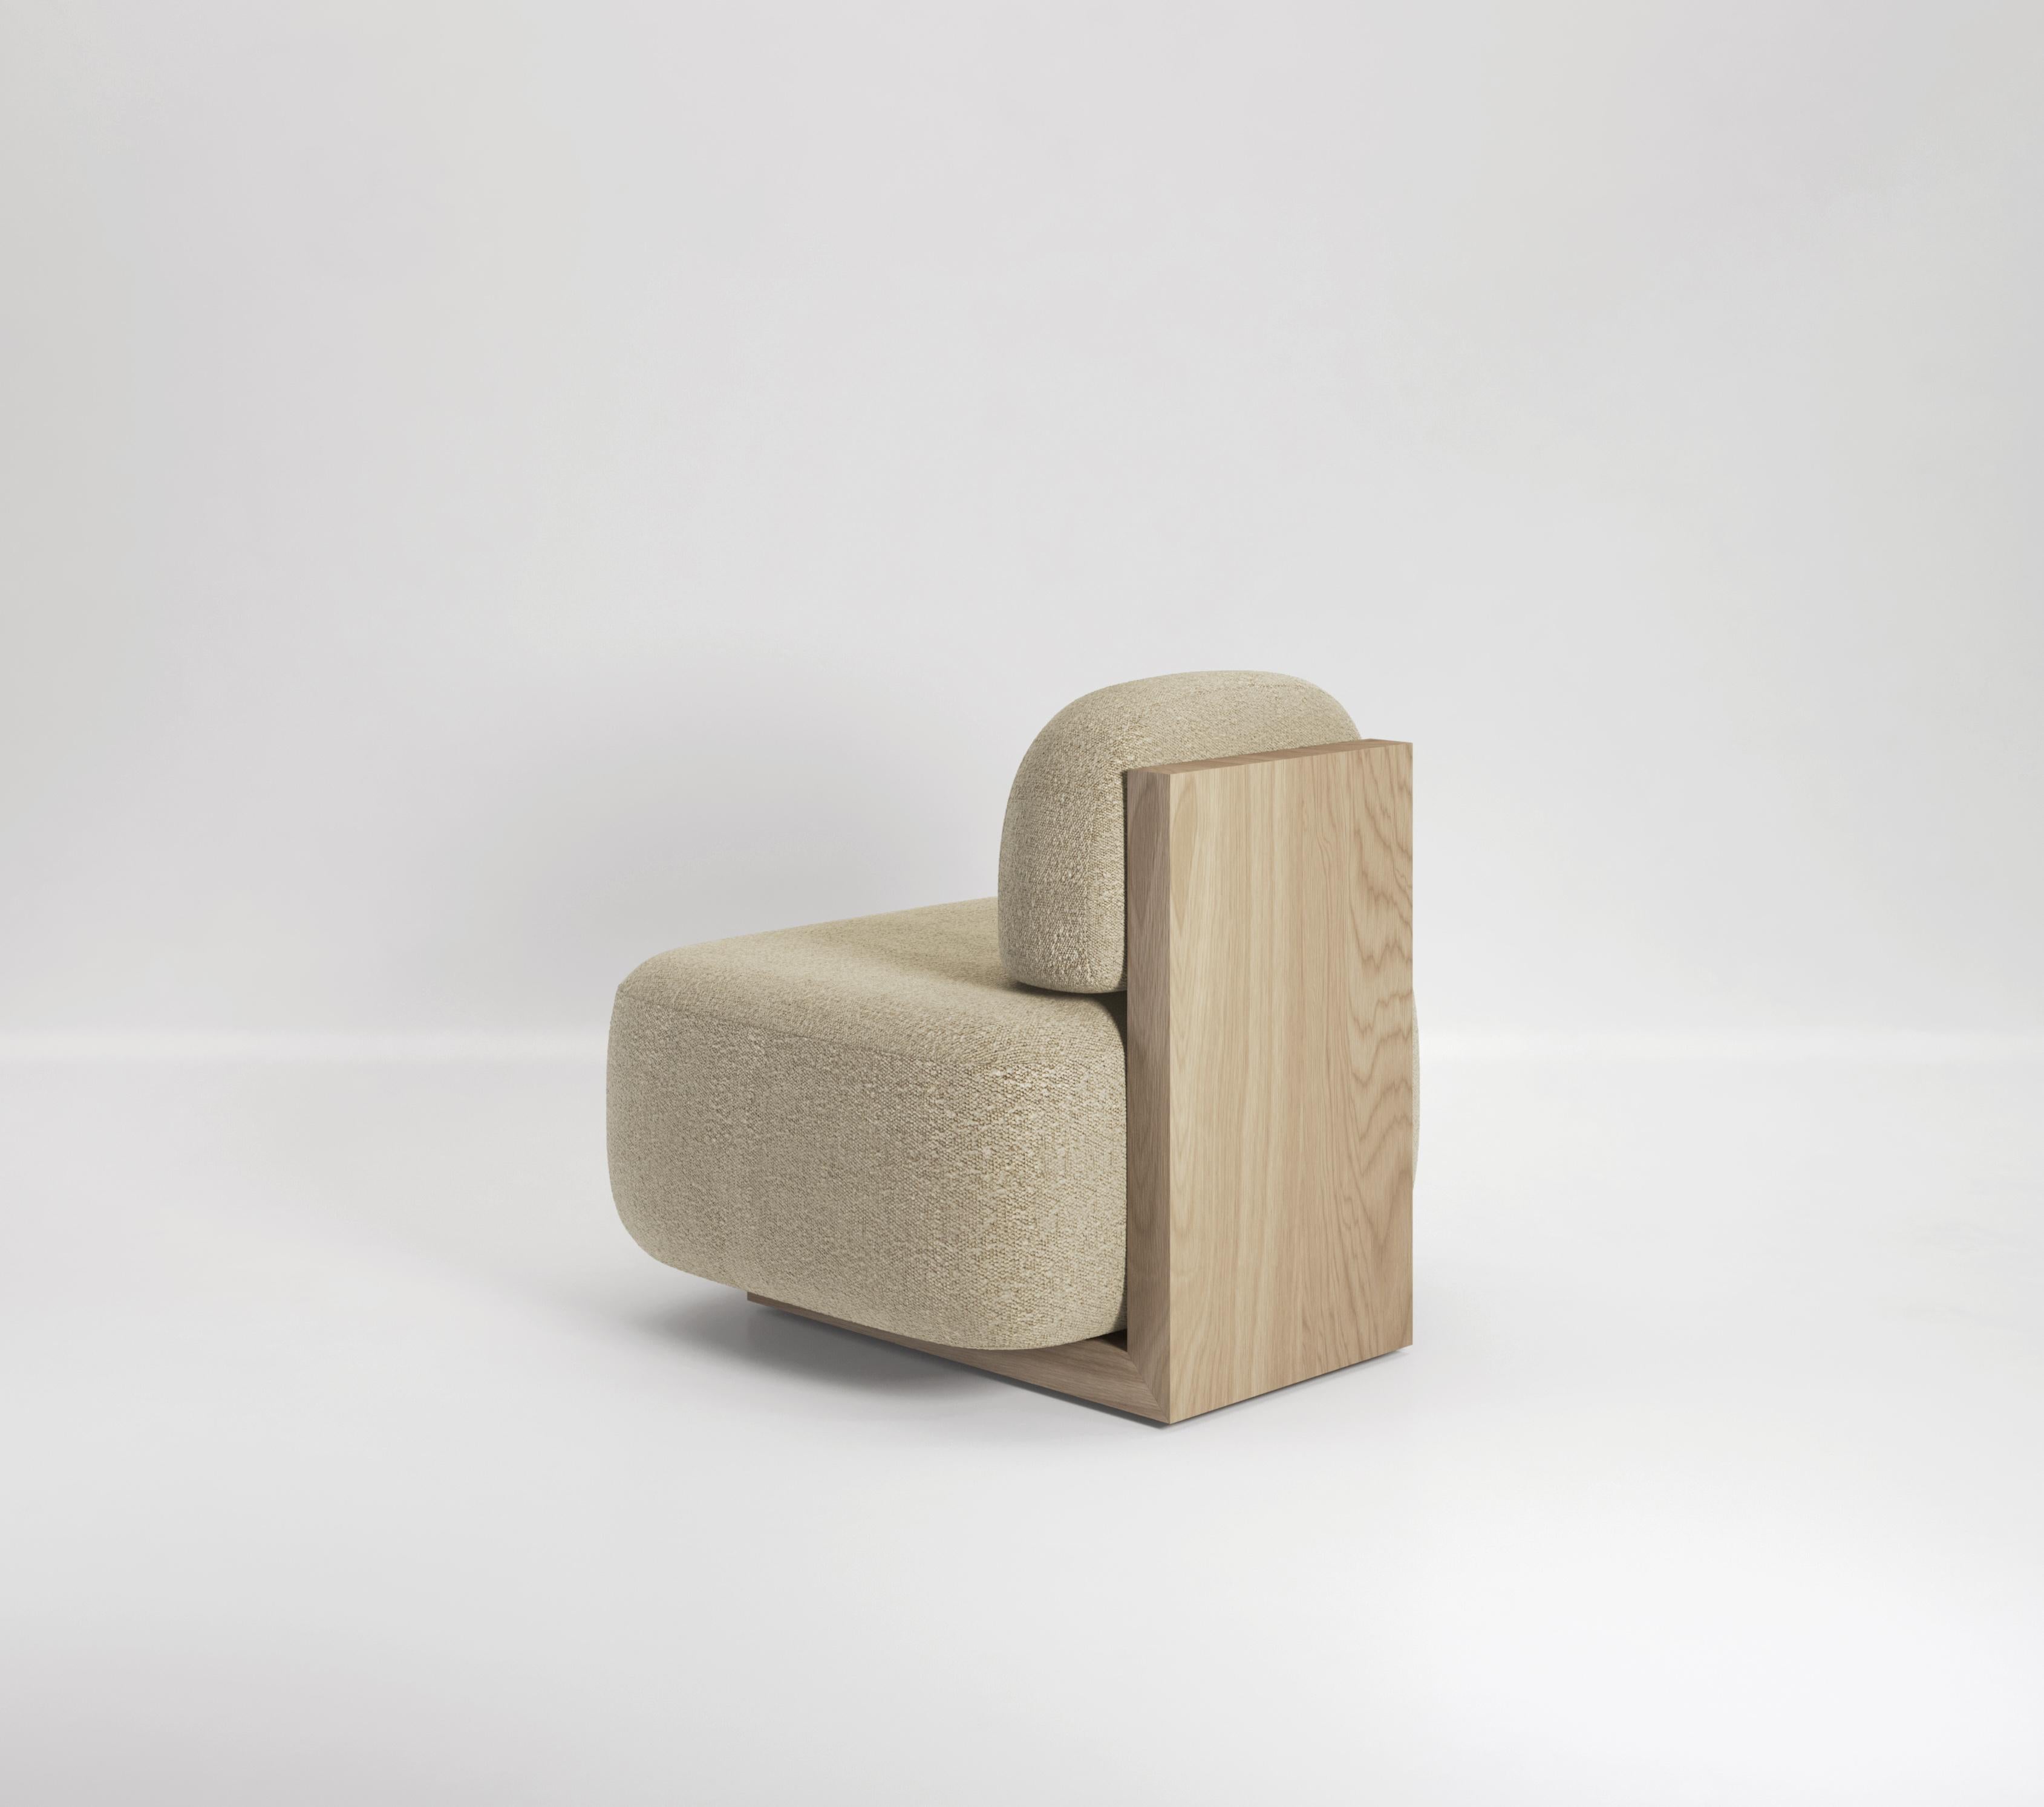 La chaise longue Yoshida est une pièce minimale conçue pour être belle sous tous les angles. De face, deux coussins surdimensionnés semblent flotter, sans support et en équilibre sur place. De l'arrière, vous apercevez une grande pièce de bois